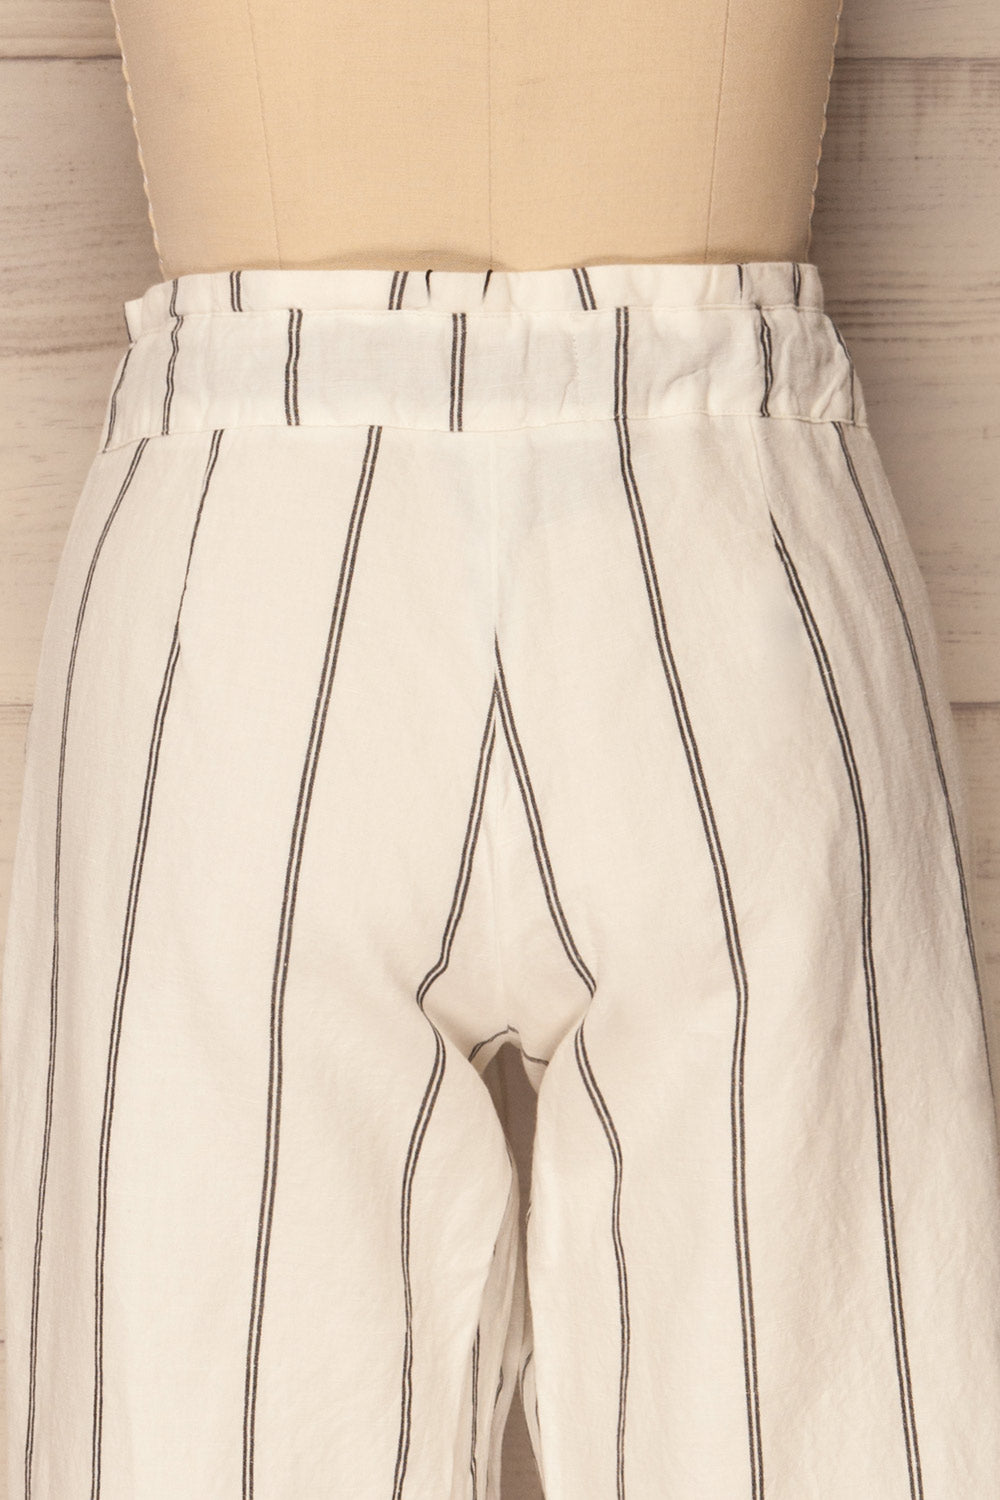 Aganderon White & Black Striped Pants | La Petite Garçonne Chpt. 2 7